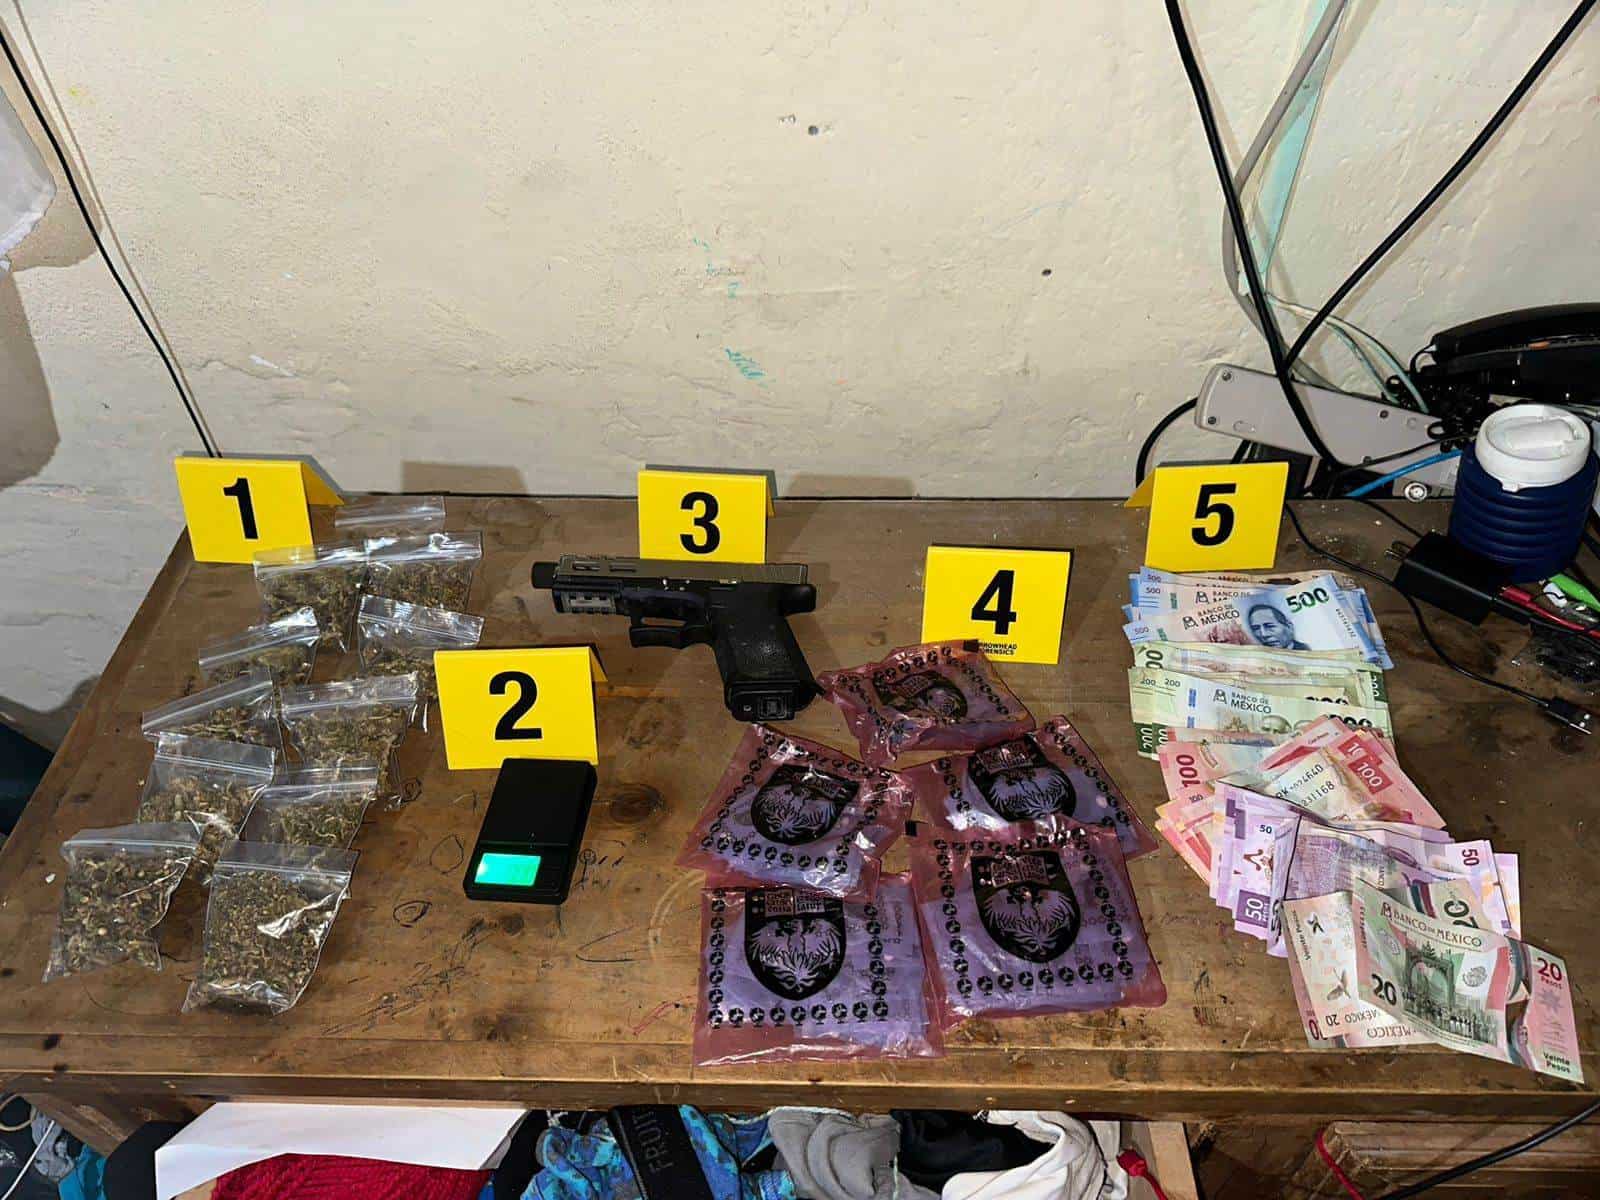 Tres detenidos y tres armas de fuego aseguradas, además de droga, fue el resultado de cateos realizados ayer por la Fiscalía General de Justicia en el municipio de San Pedro, como parte de indagatorias por presuntas actividades de narcomenudeo.